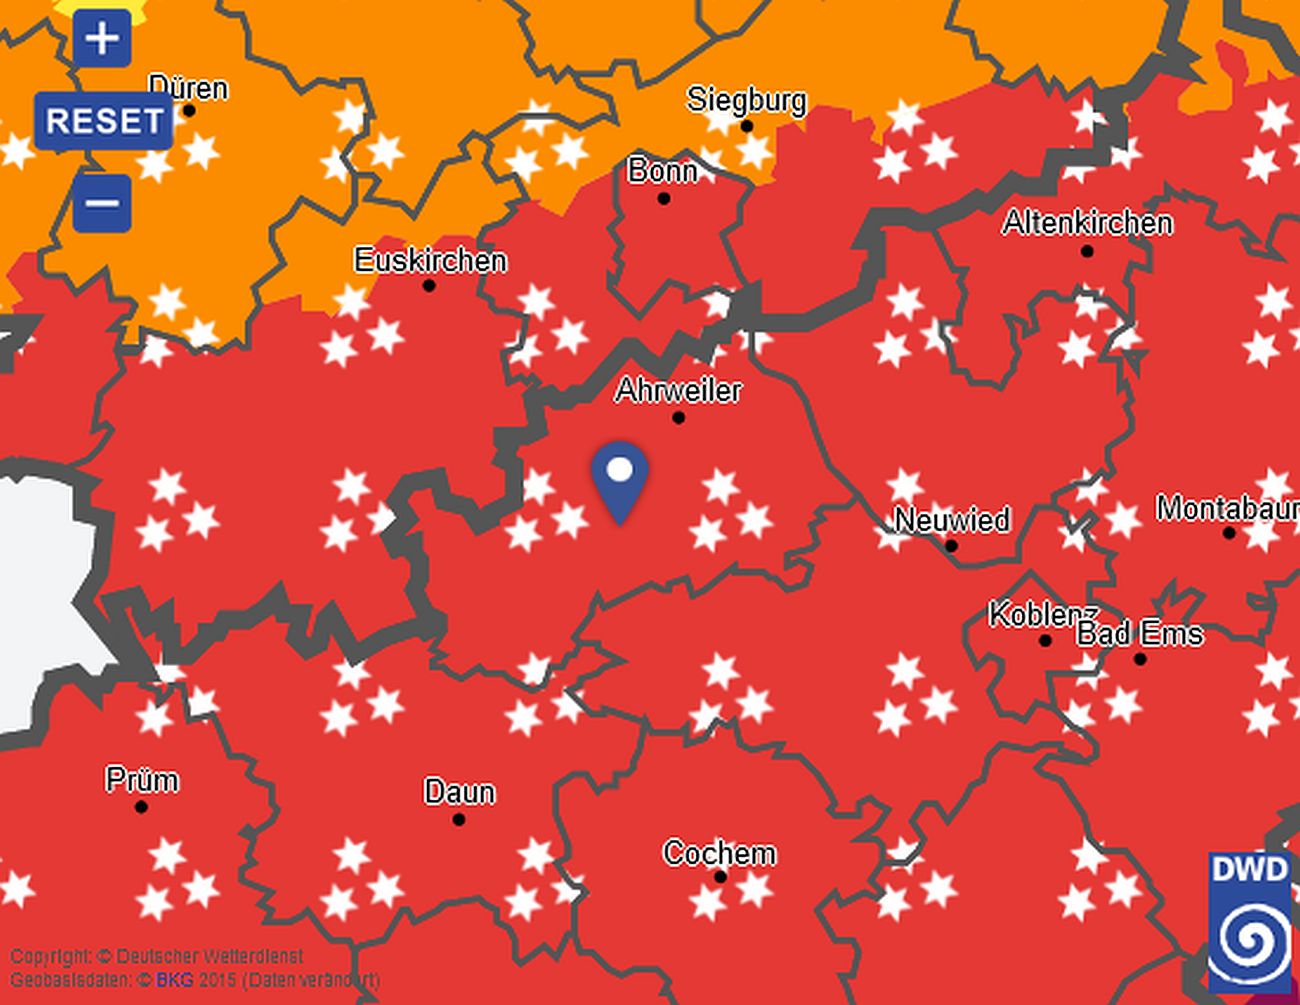 Deutscher Wetterdienst warnt vor starkem Schneefall bis zu 35 cm im Kreis Ahrweiler Zweithöchste Warnstufe